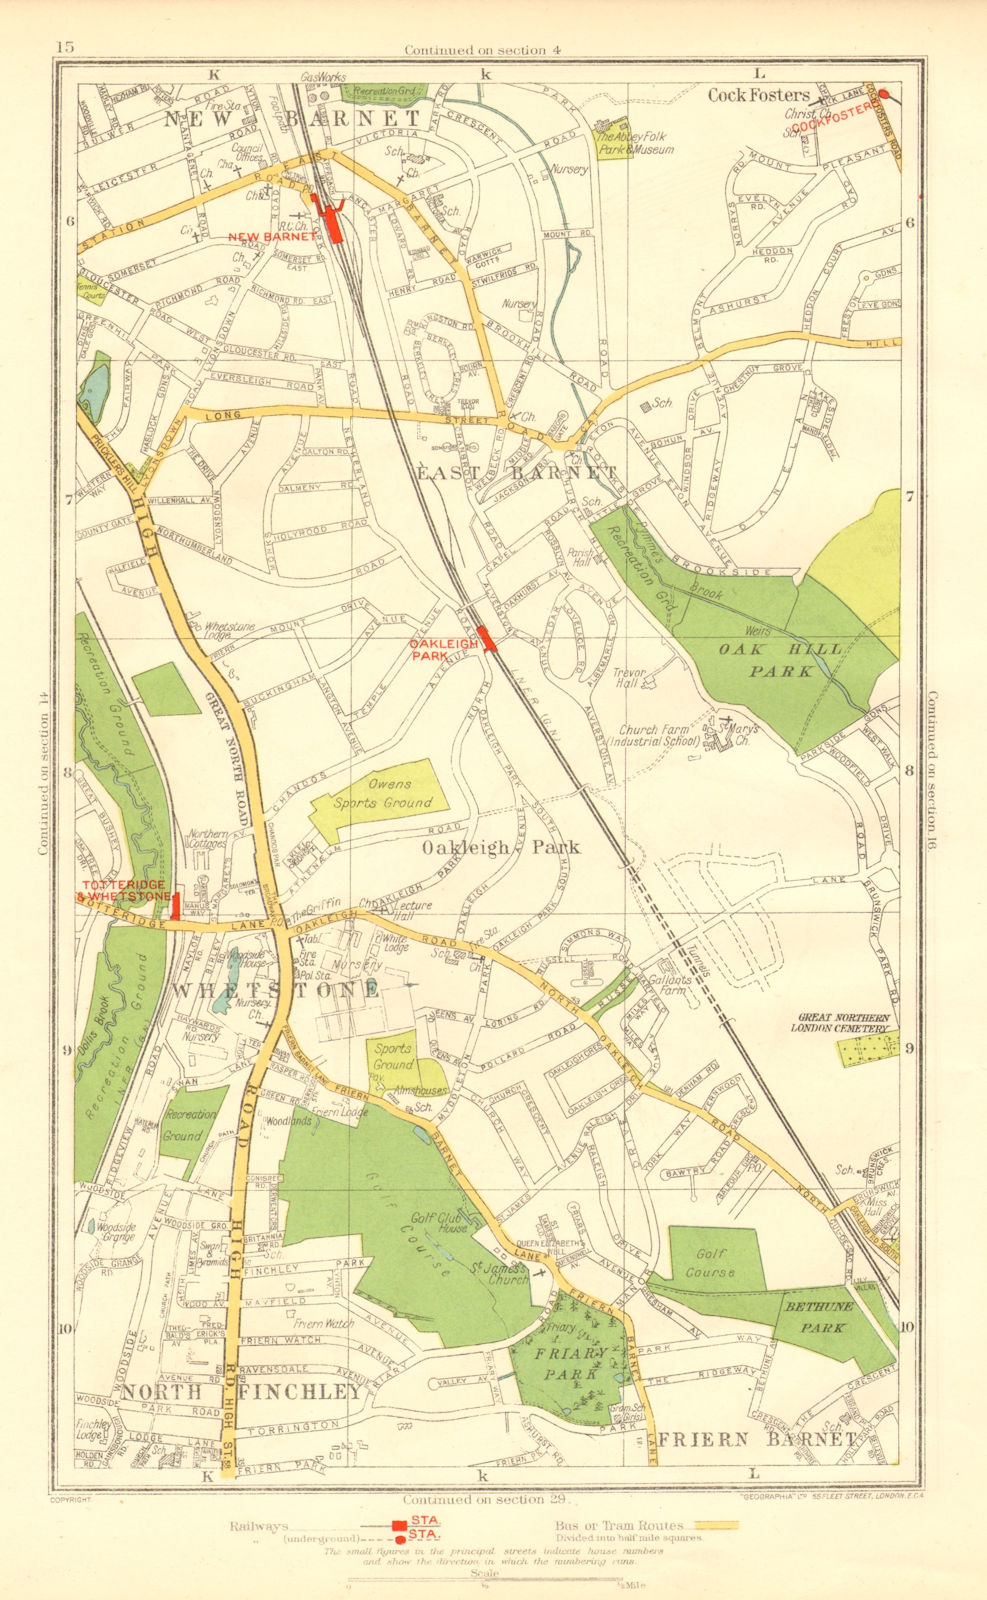 EAST BARNET. Friern Barnet;Whetstone Finchley Cockfosters Totteridge 1937 map